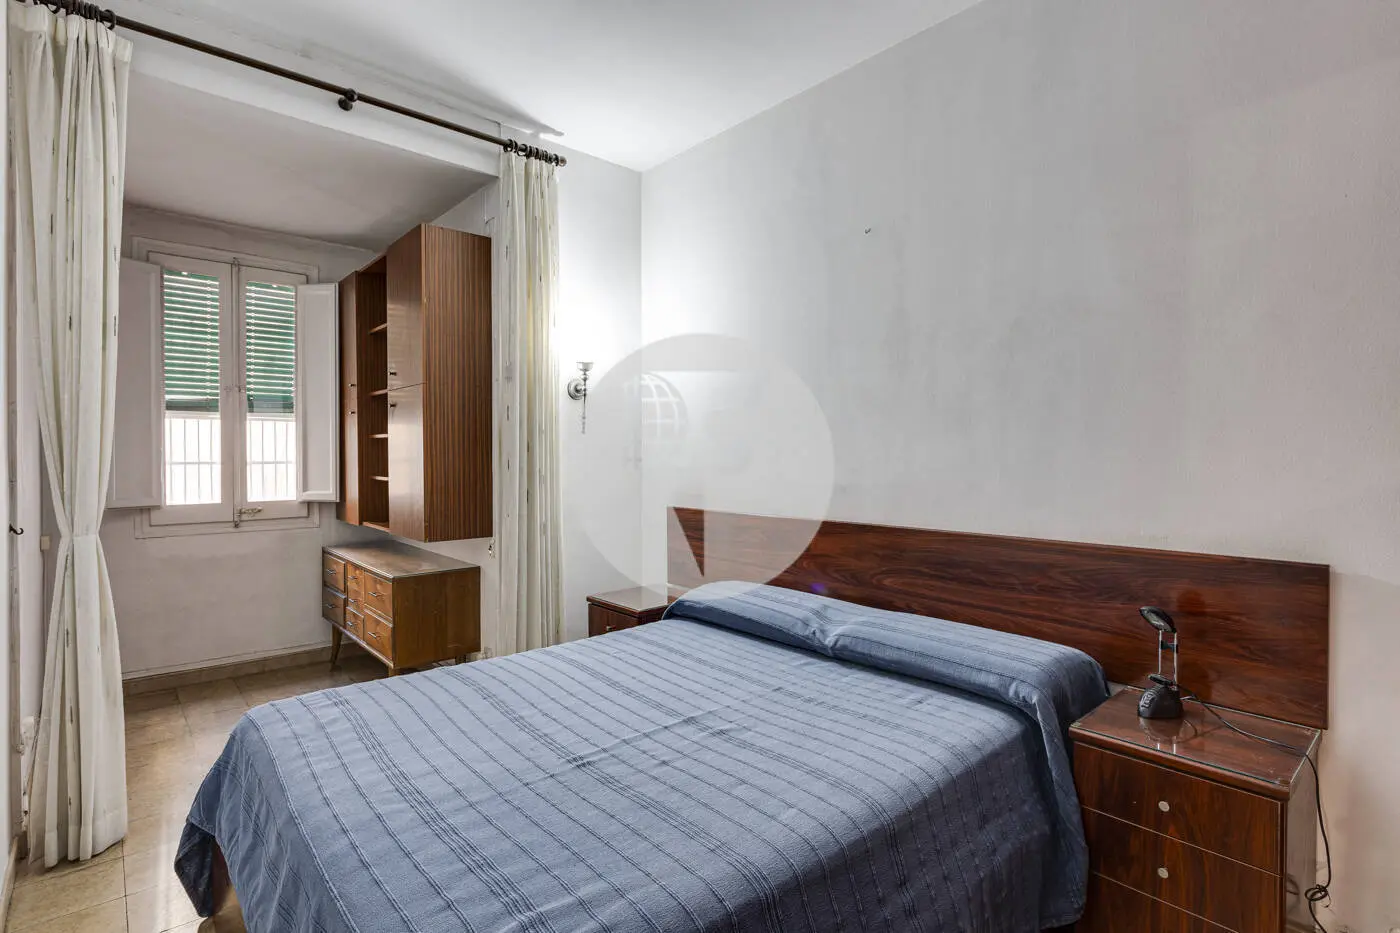 Piso de 3 habitaciones ubicado en el barrio de la Nova Esquerra de l'Eixample de Barcelona. 16